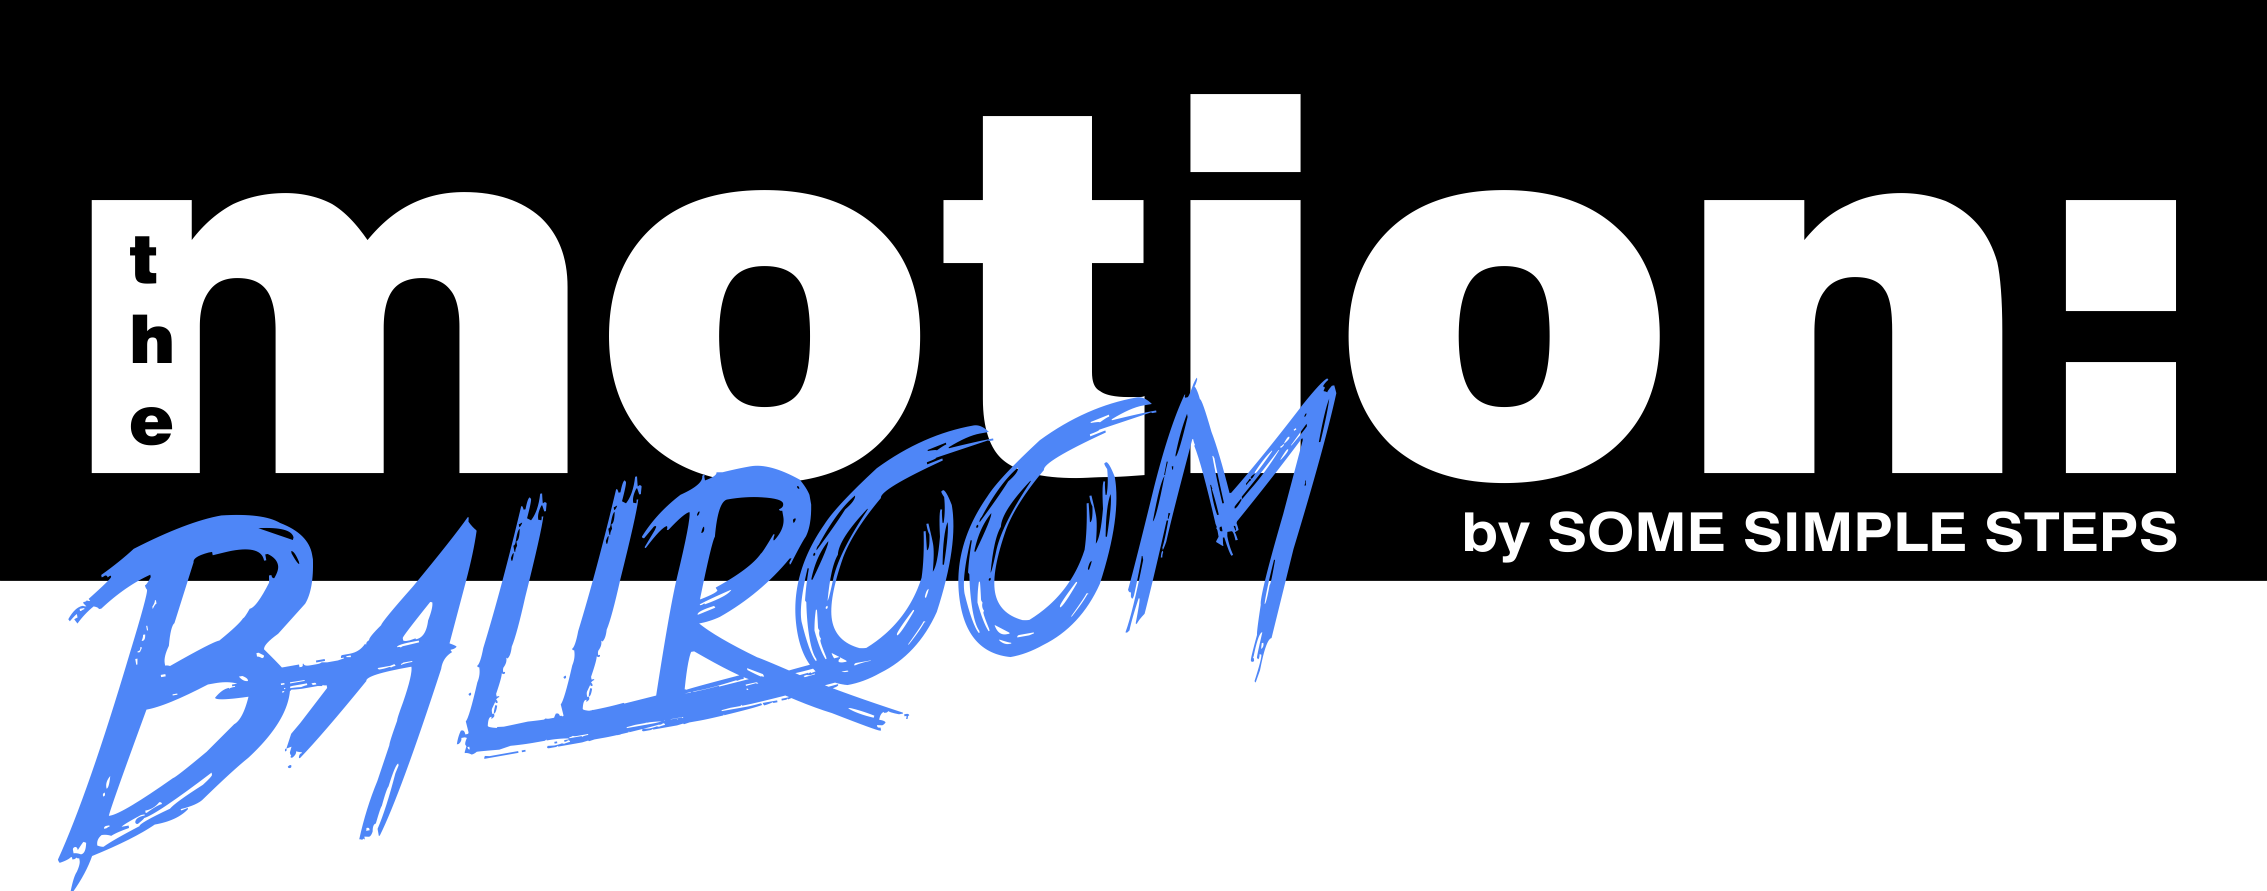 motion: Ballroom